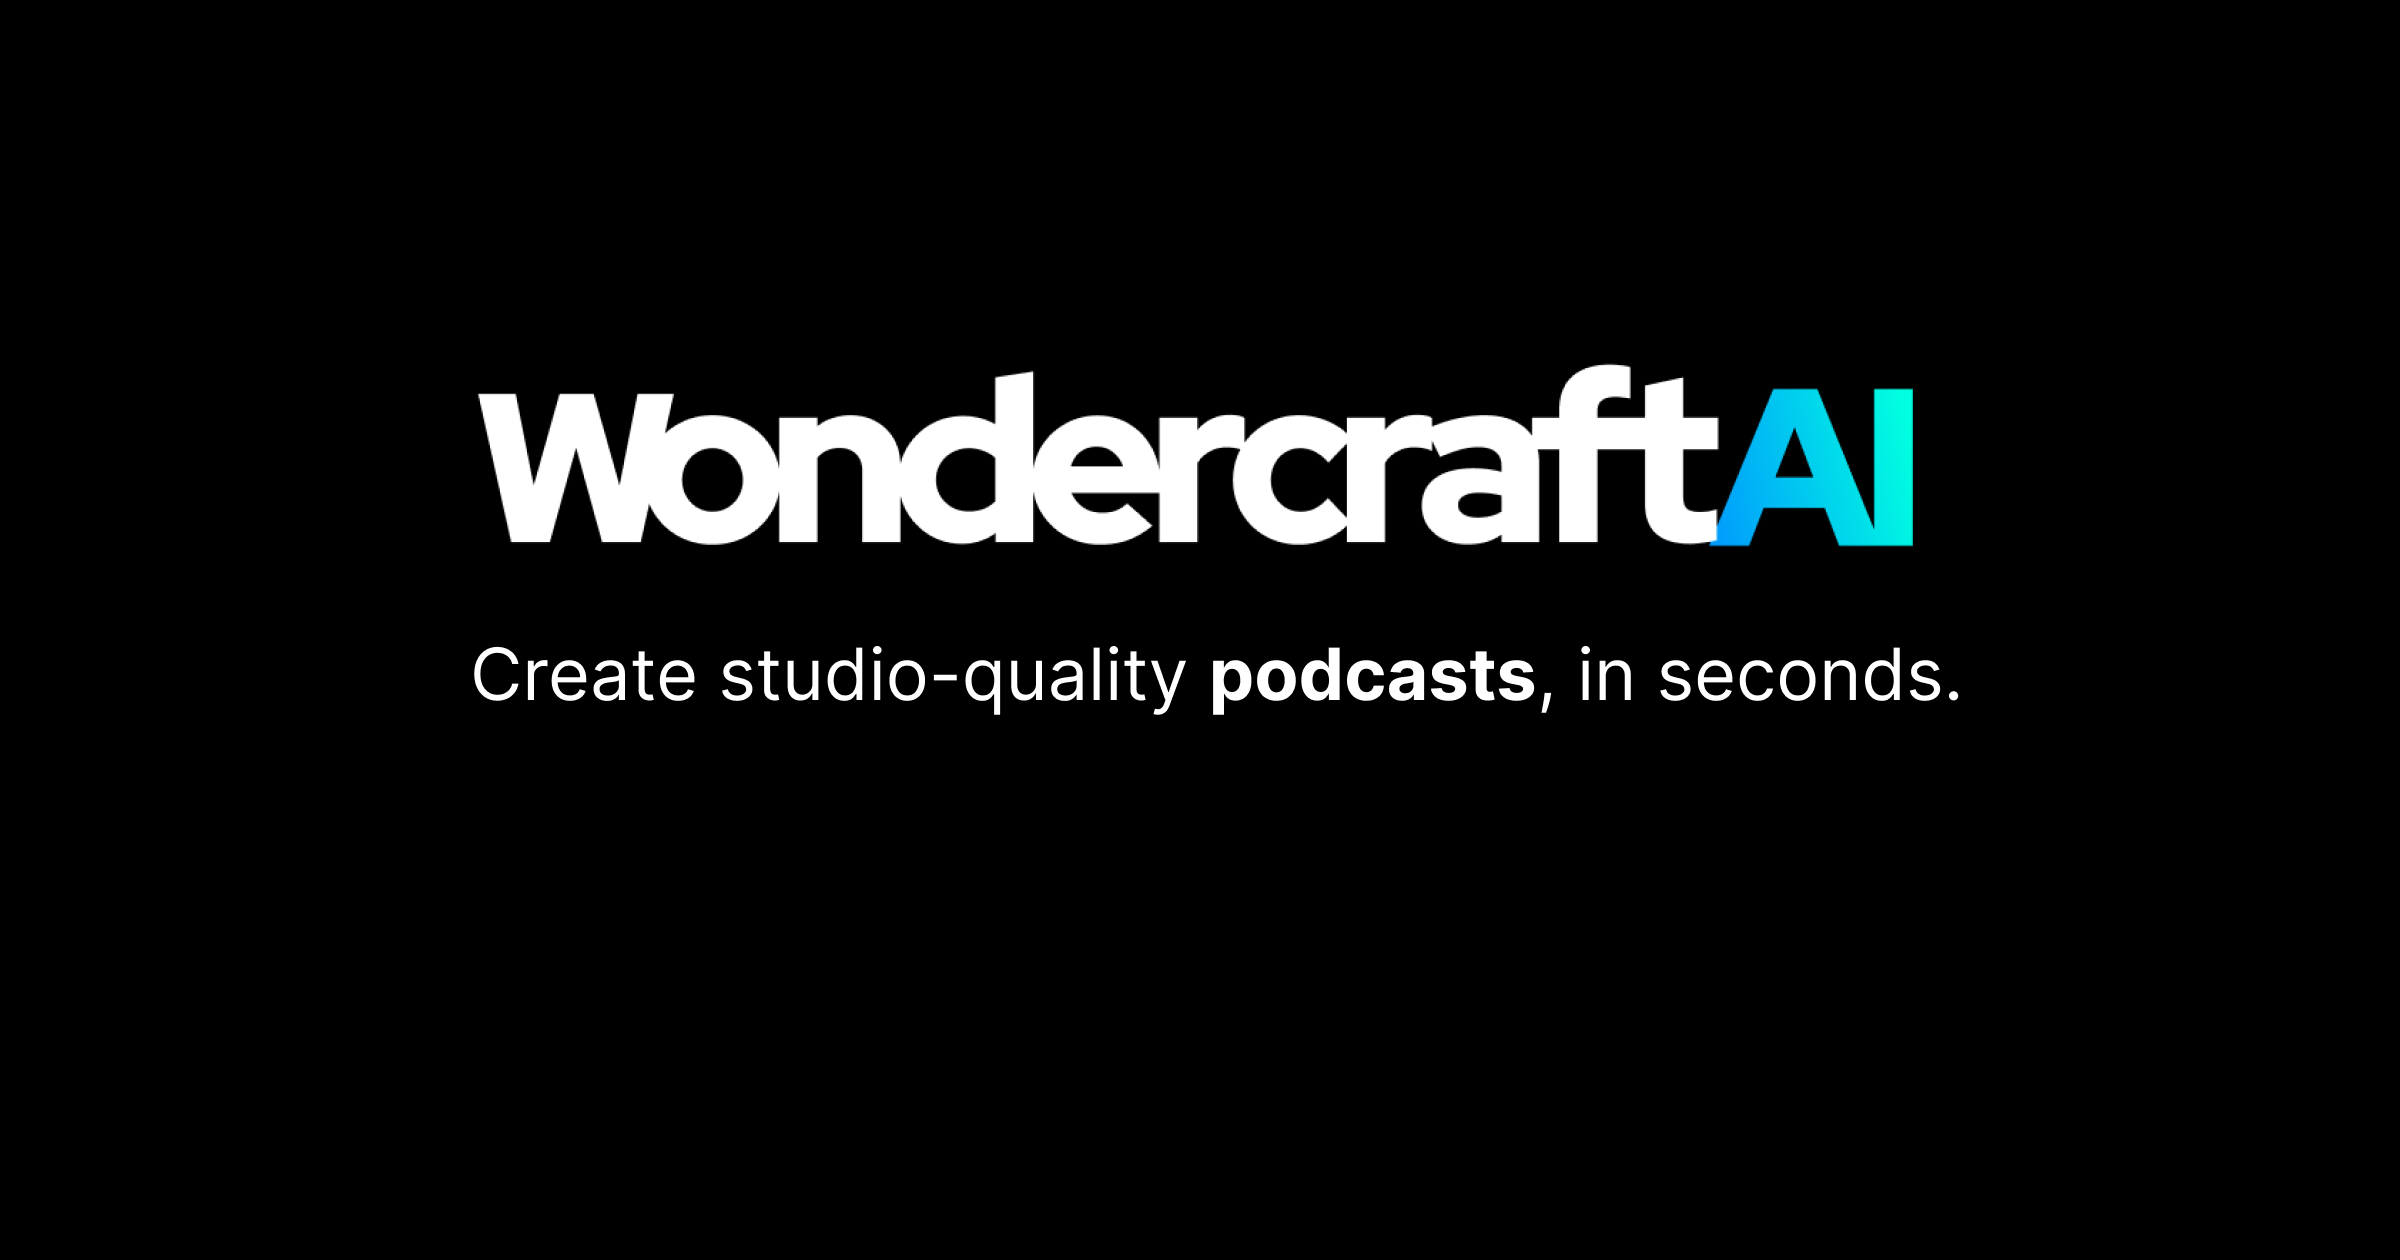 Wondercraft AI - A platform for podcasting to create studio-quality podcasts